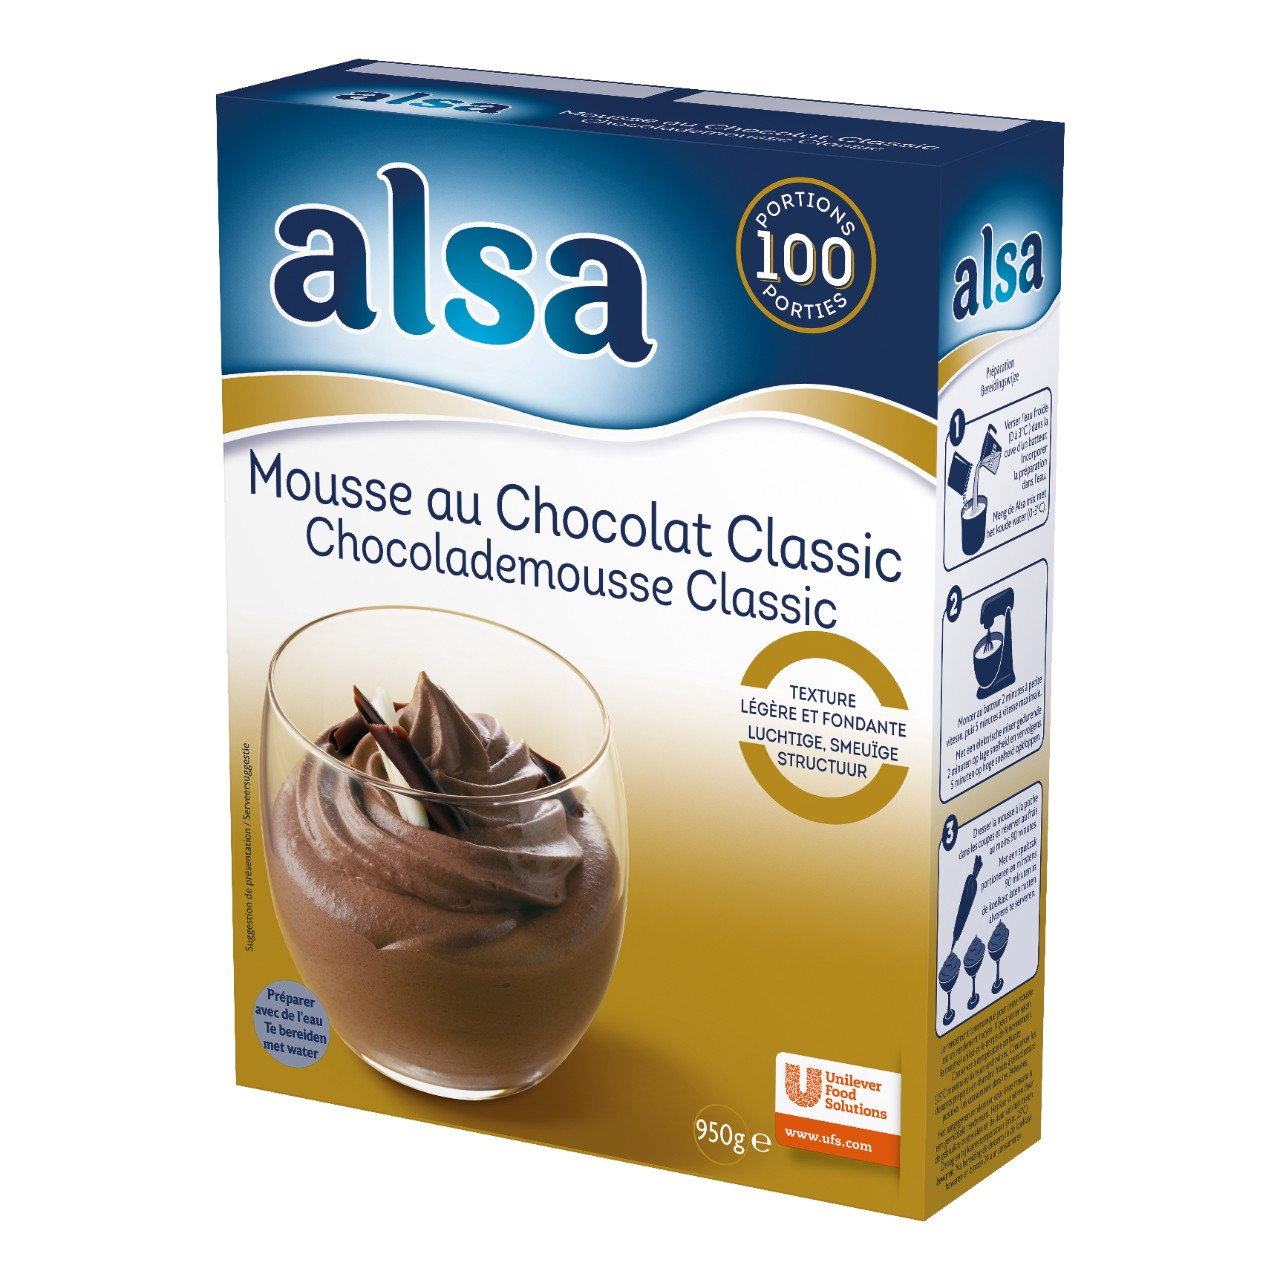 Chocolademousse classic